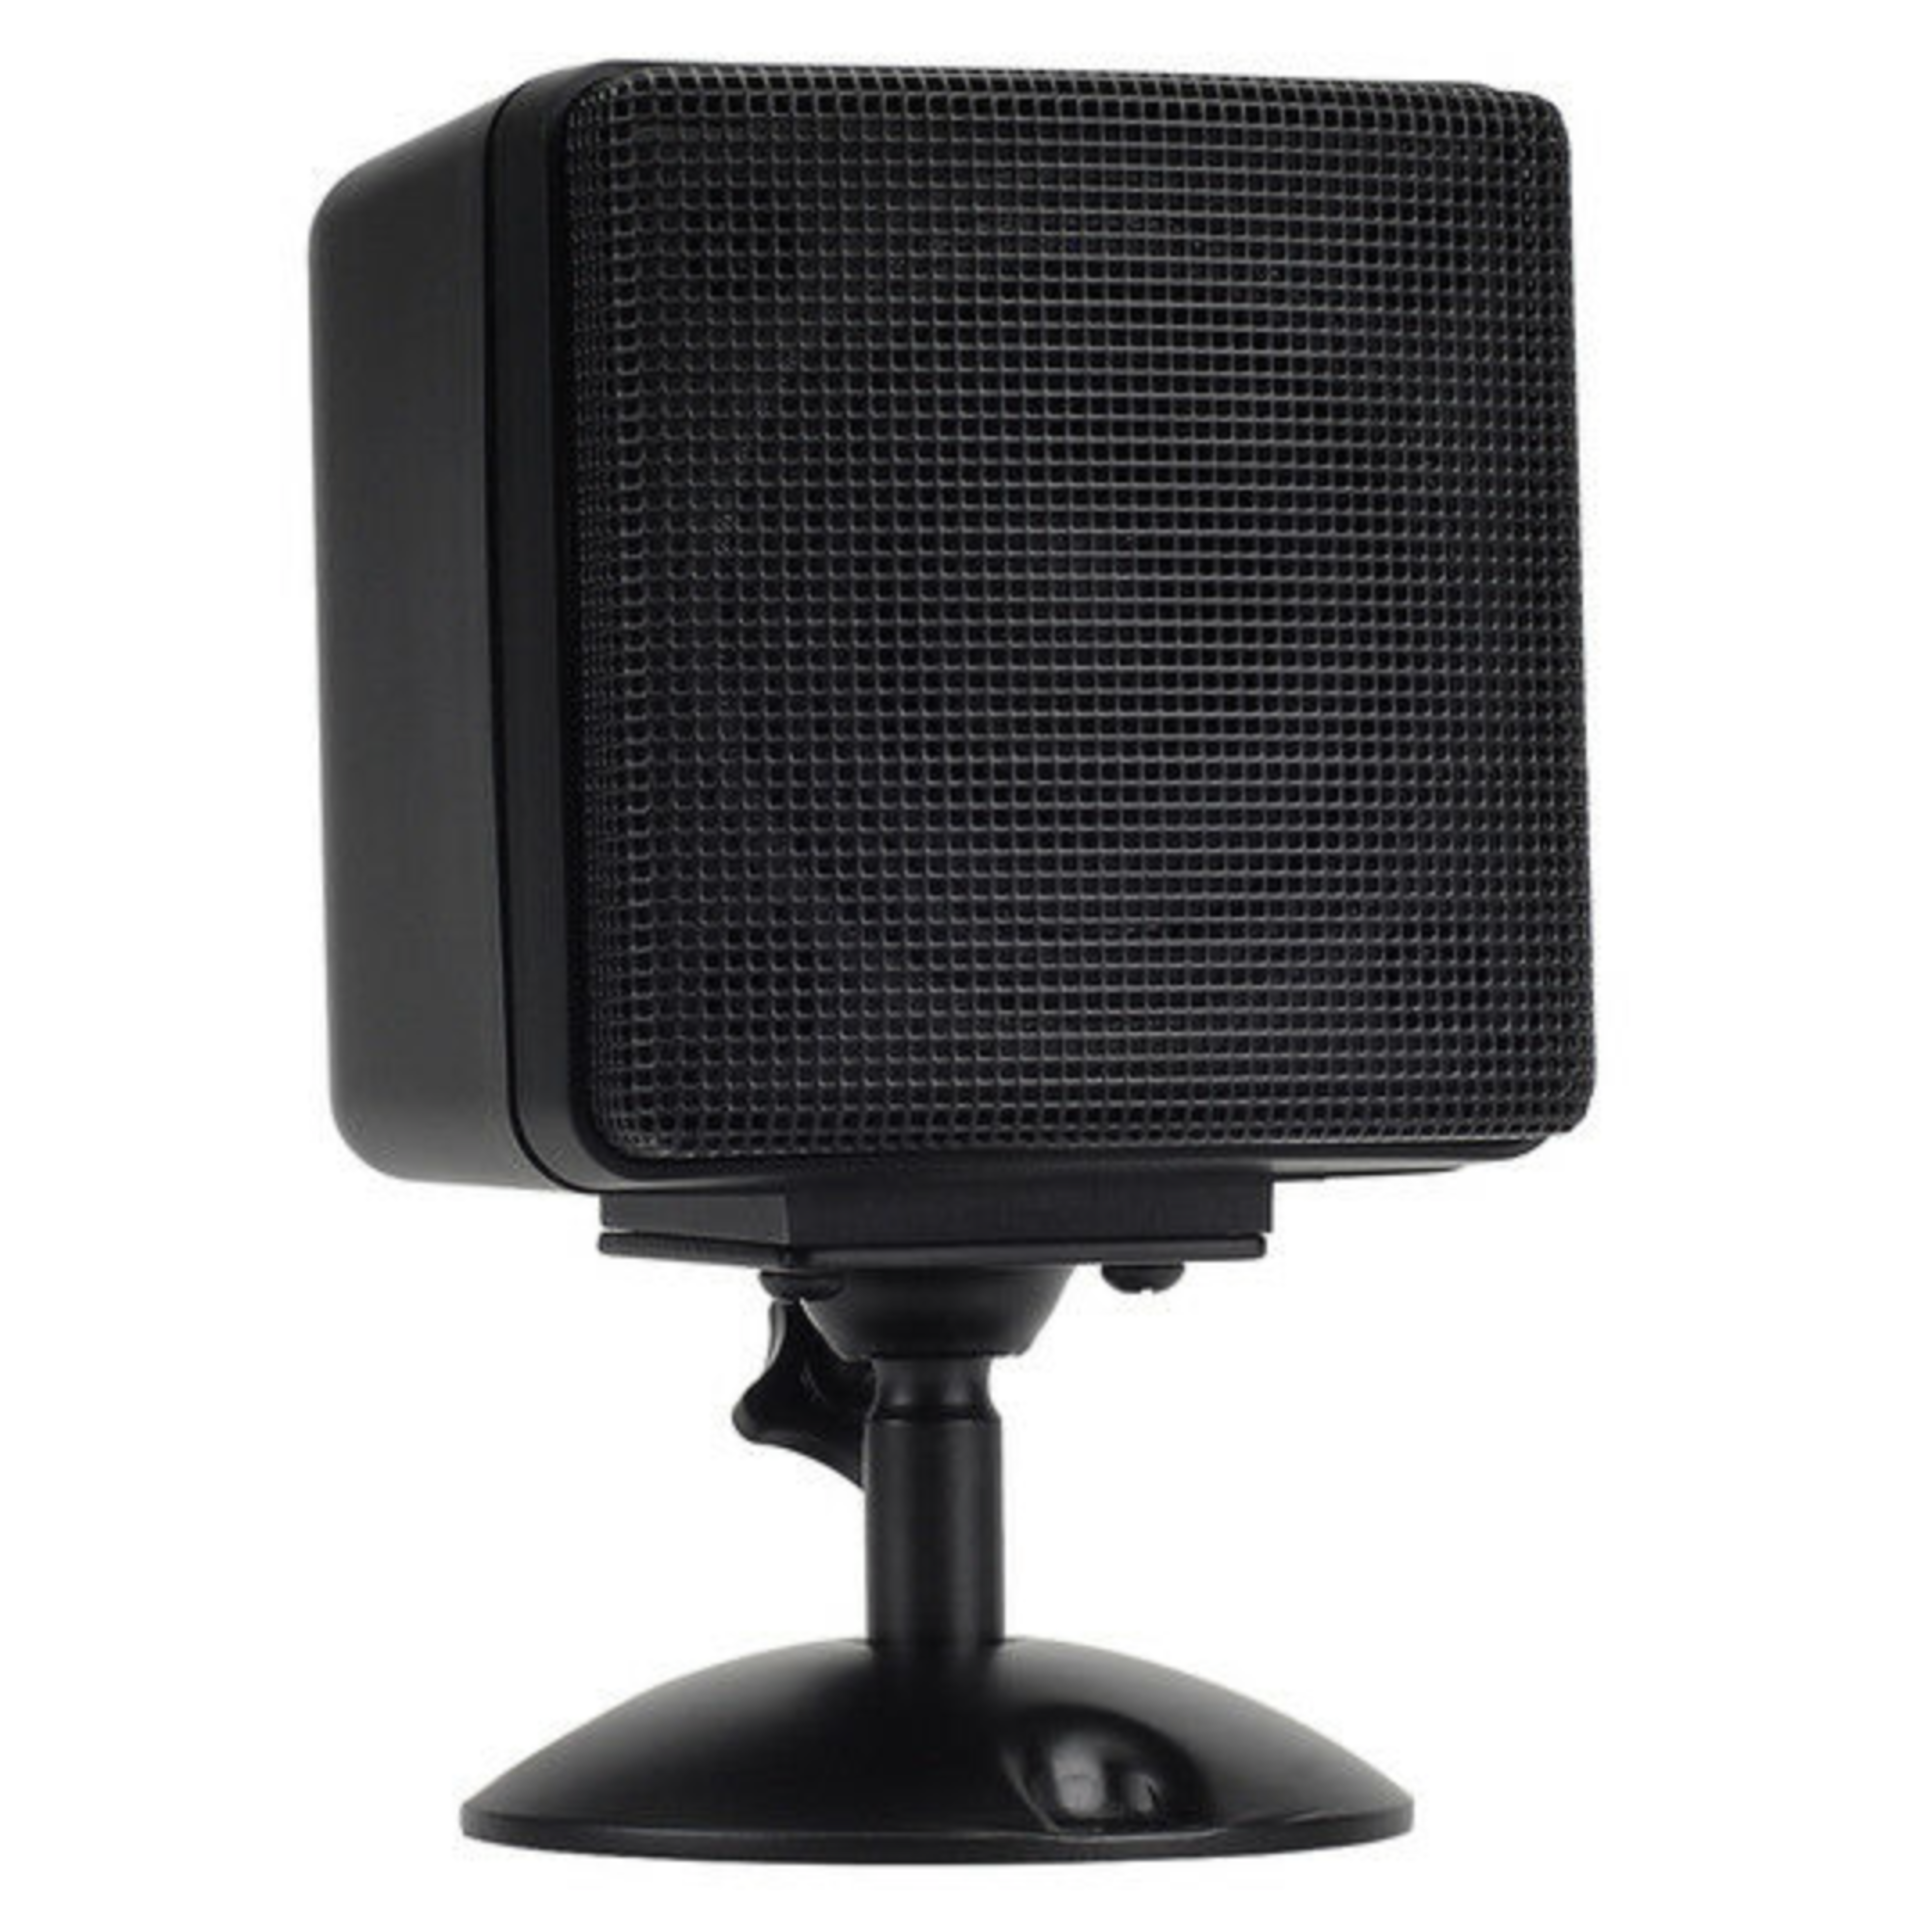 10 SINGLE SPEAKER BLACK SPEAKER W/ REMOVABLE PEDESTAL MODEL 26961 3" Satellite Speaker (Black)